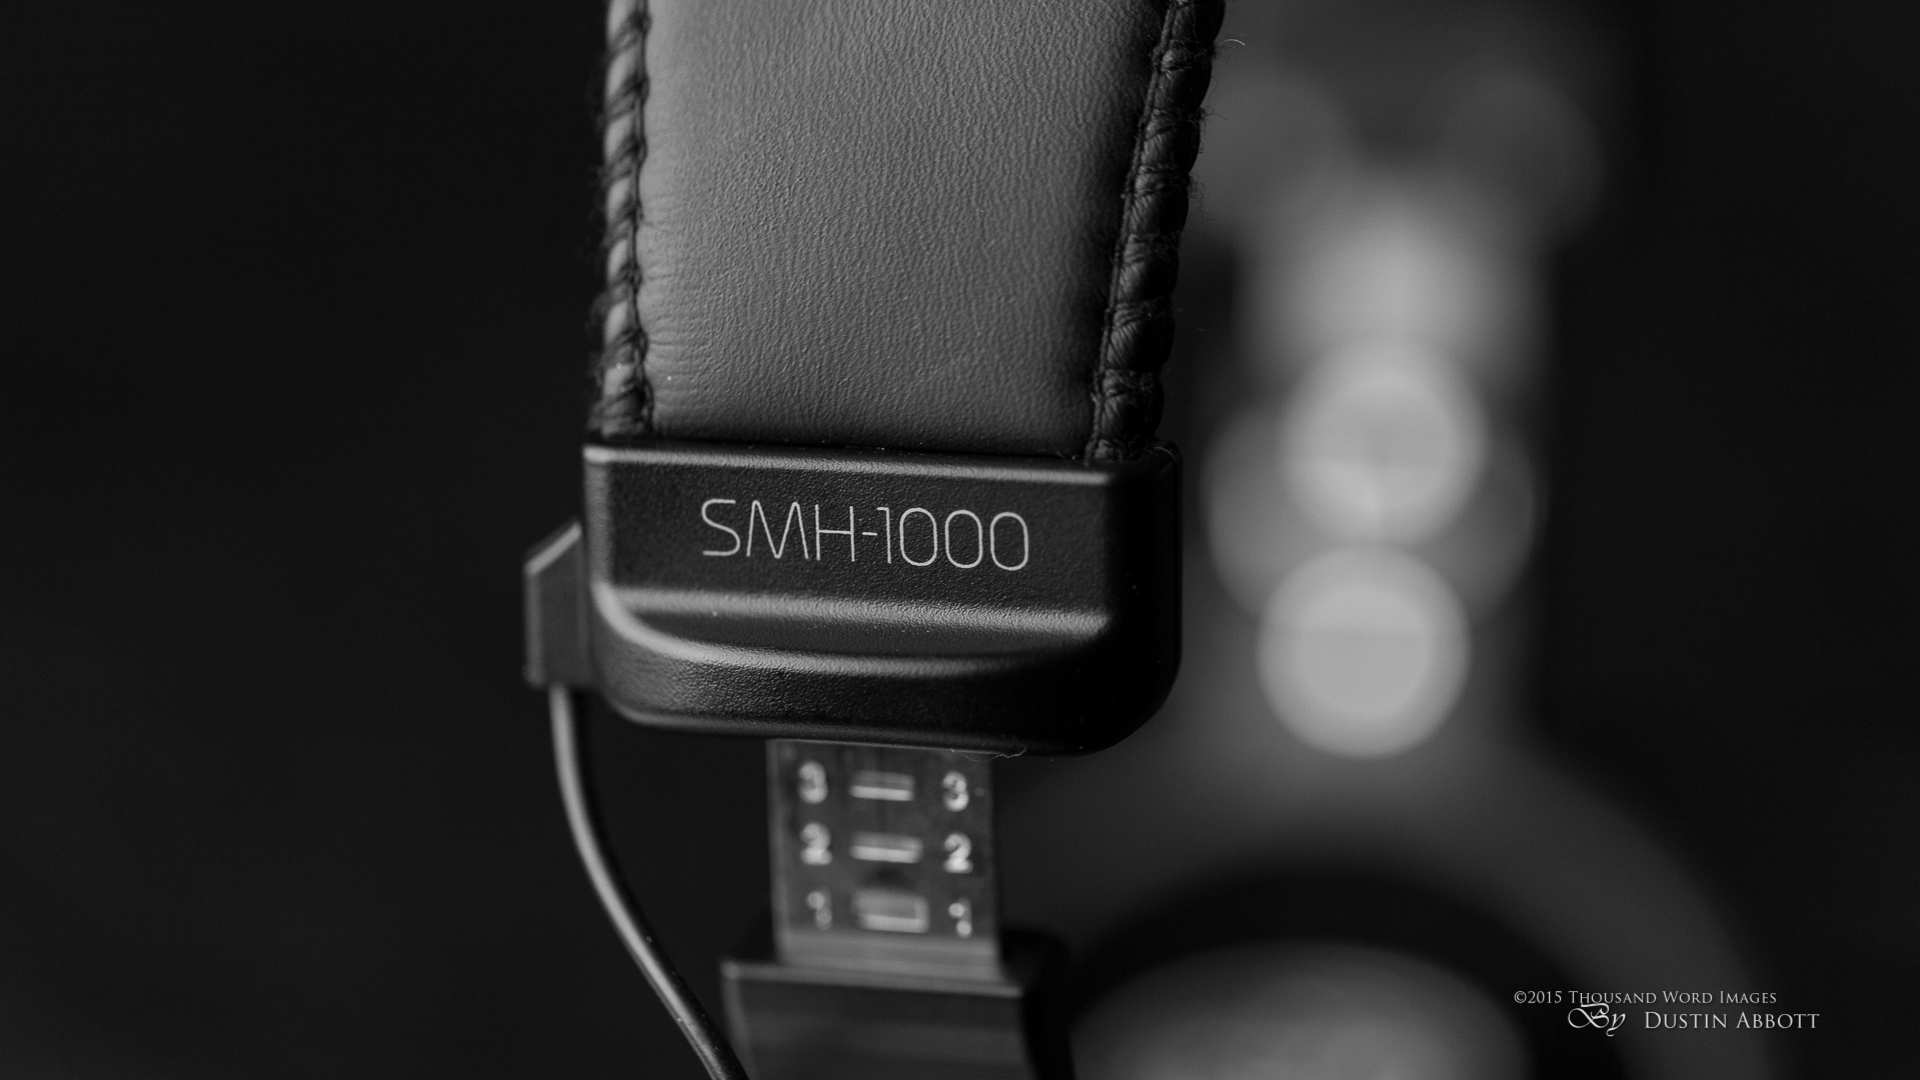 SMH-1000s